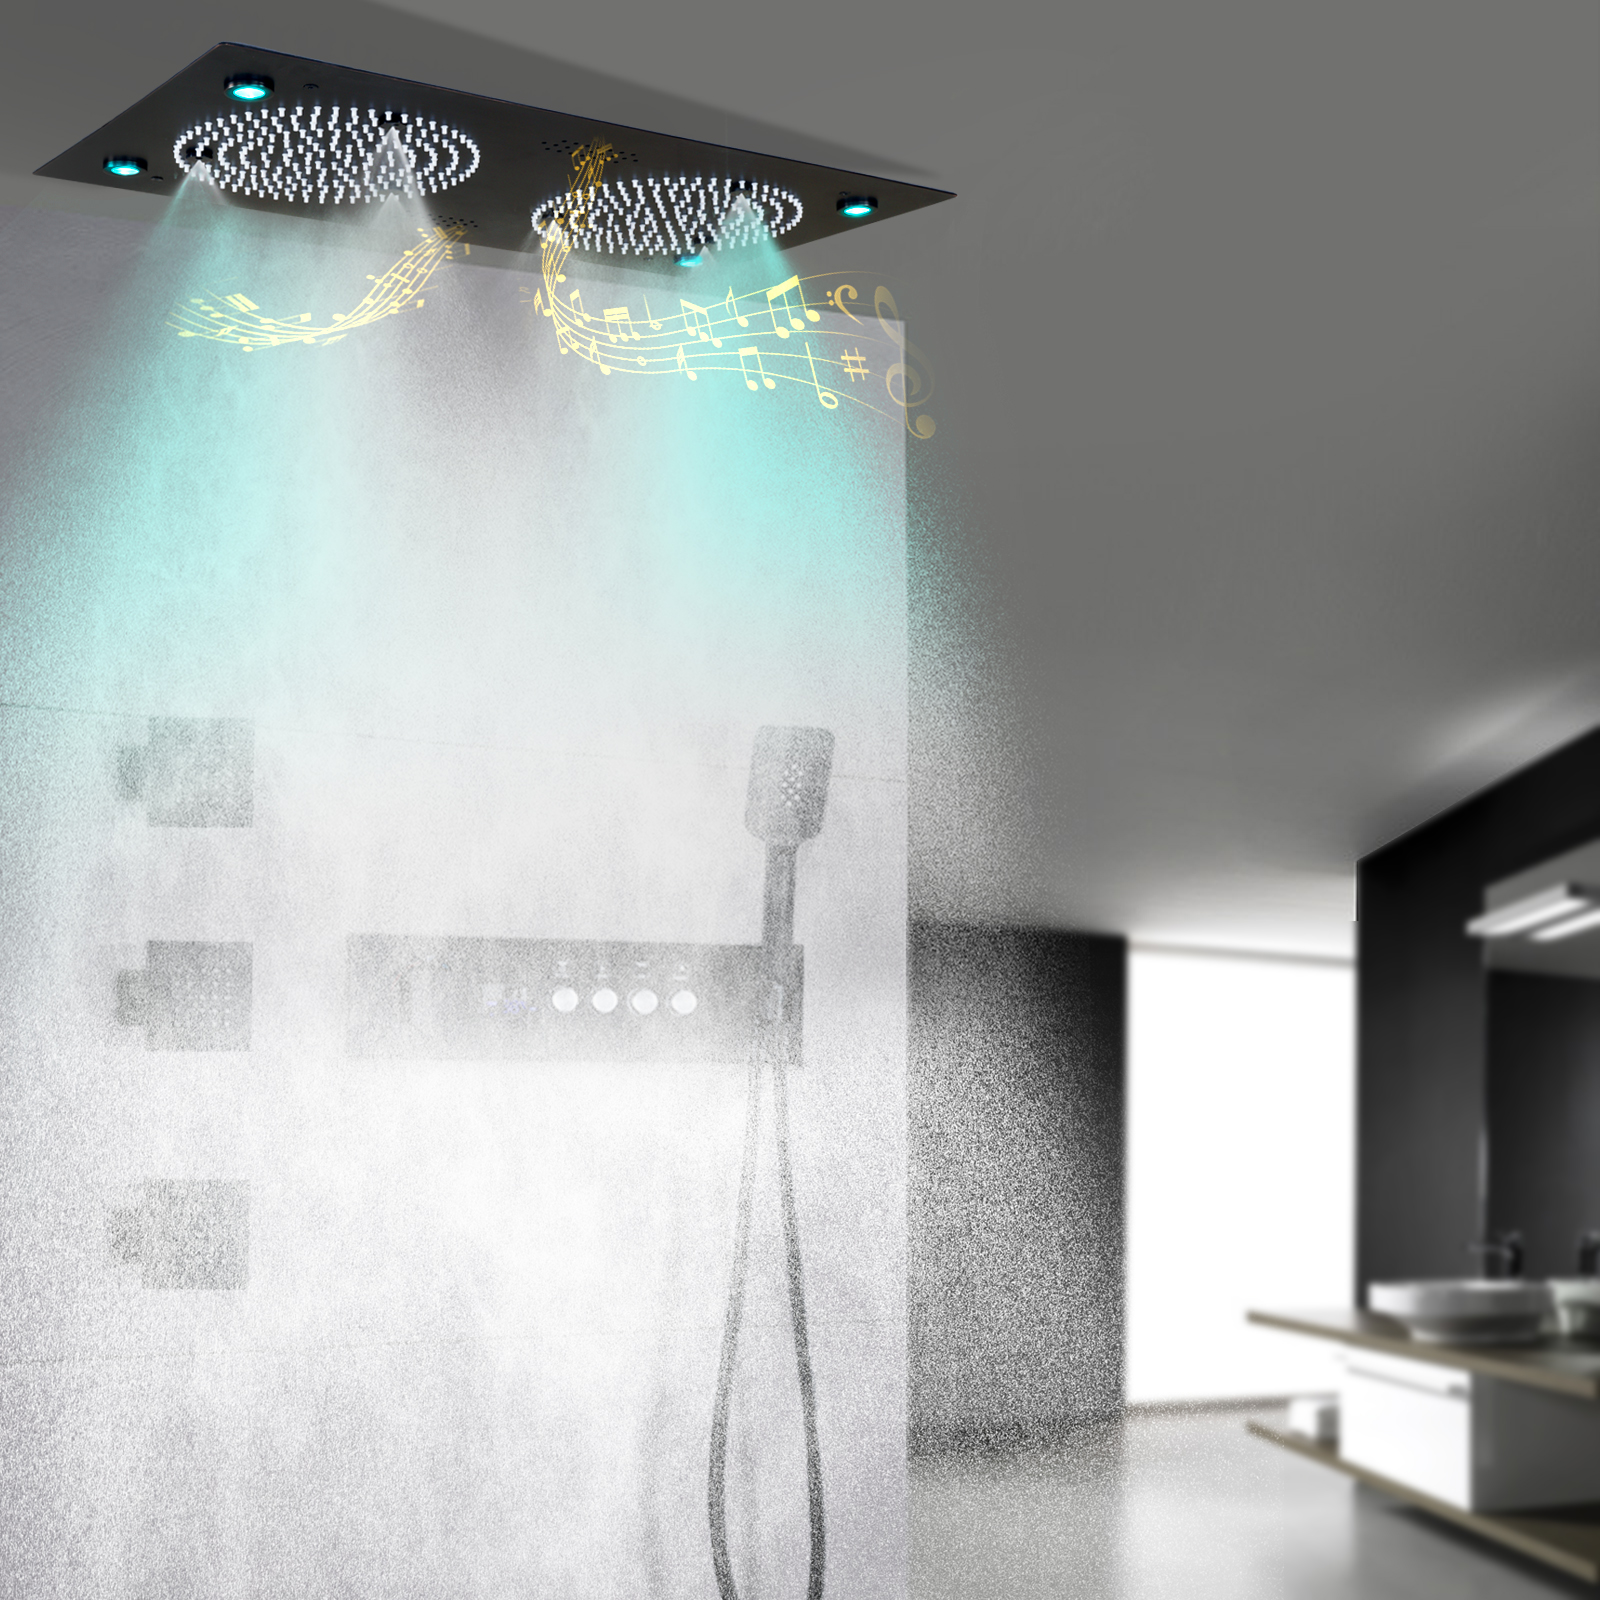 Sistema de chuveiro led preto fosco 620*320mm, cabeça de chuveiro com alto-falante musical, termostática, conjunto de torneira de chuveiro de banheiro